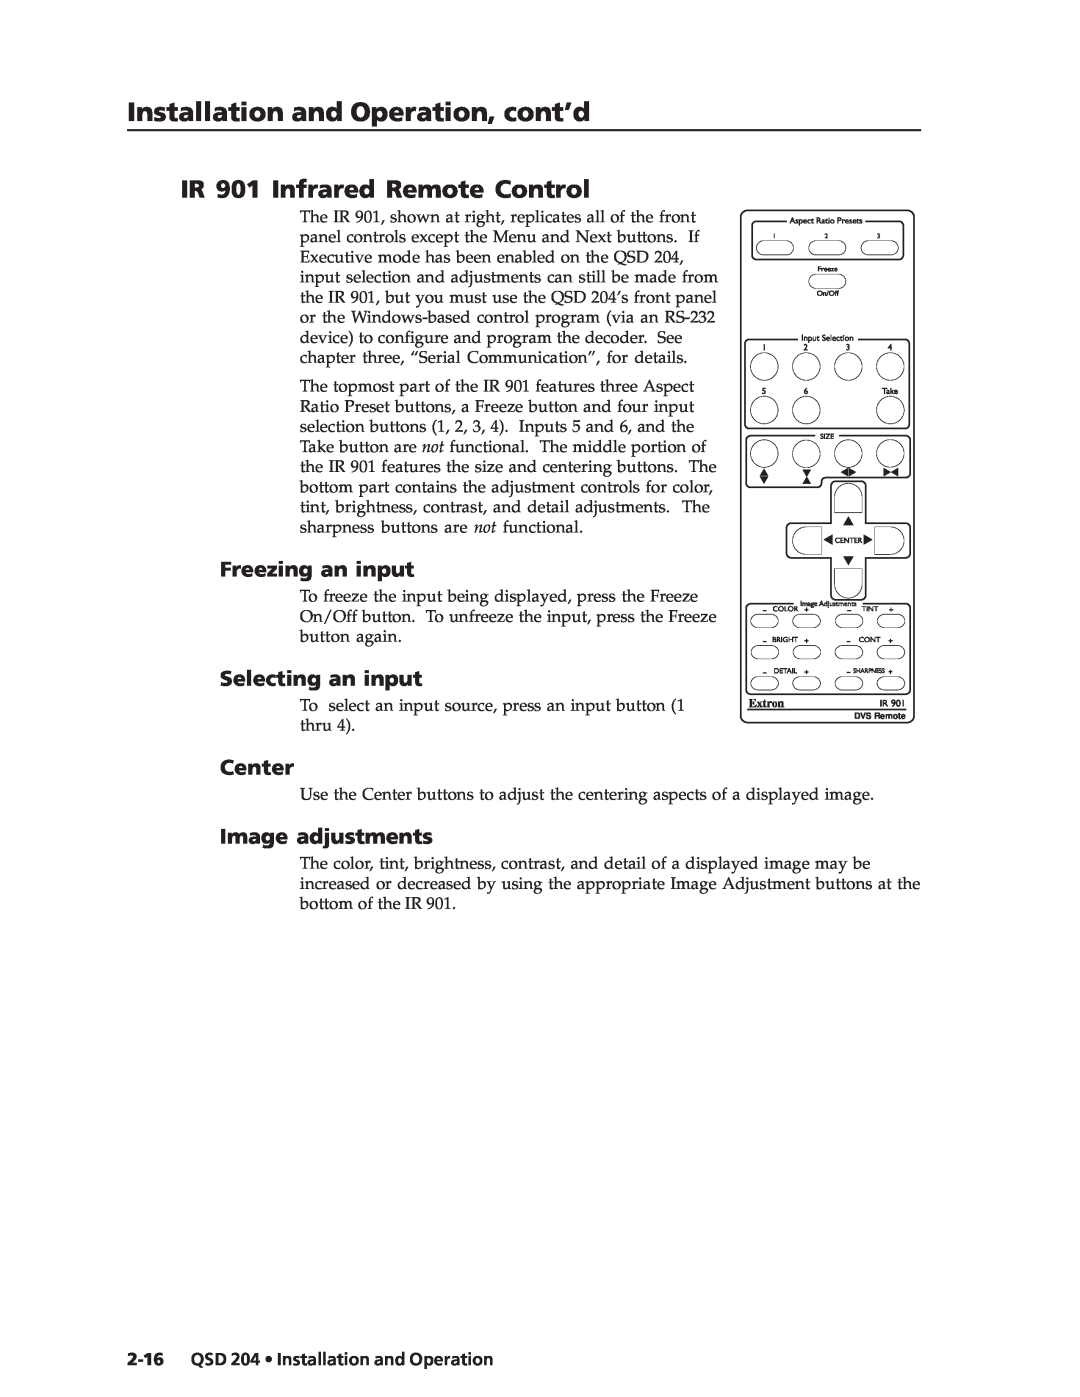 Extron electronic QSD 204 D manual IR 901 Infrared Remote Control, Freezing an input, Selecting an input, Center 